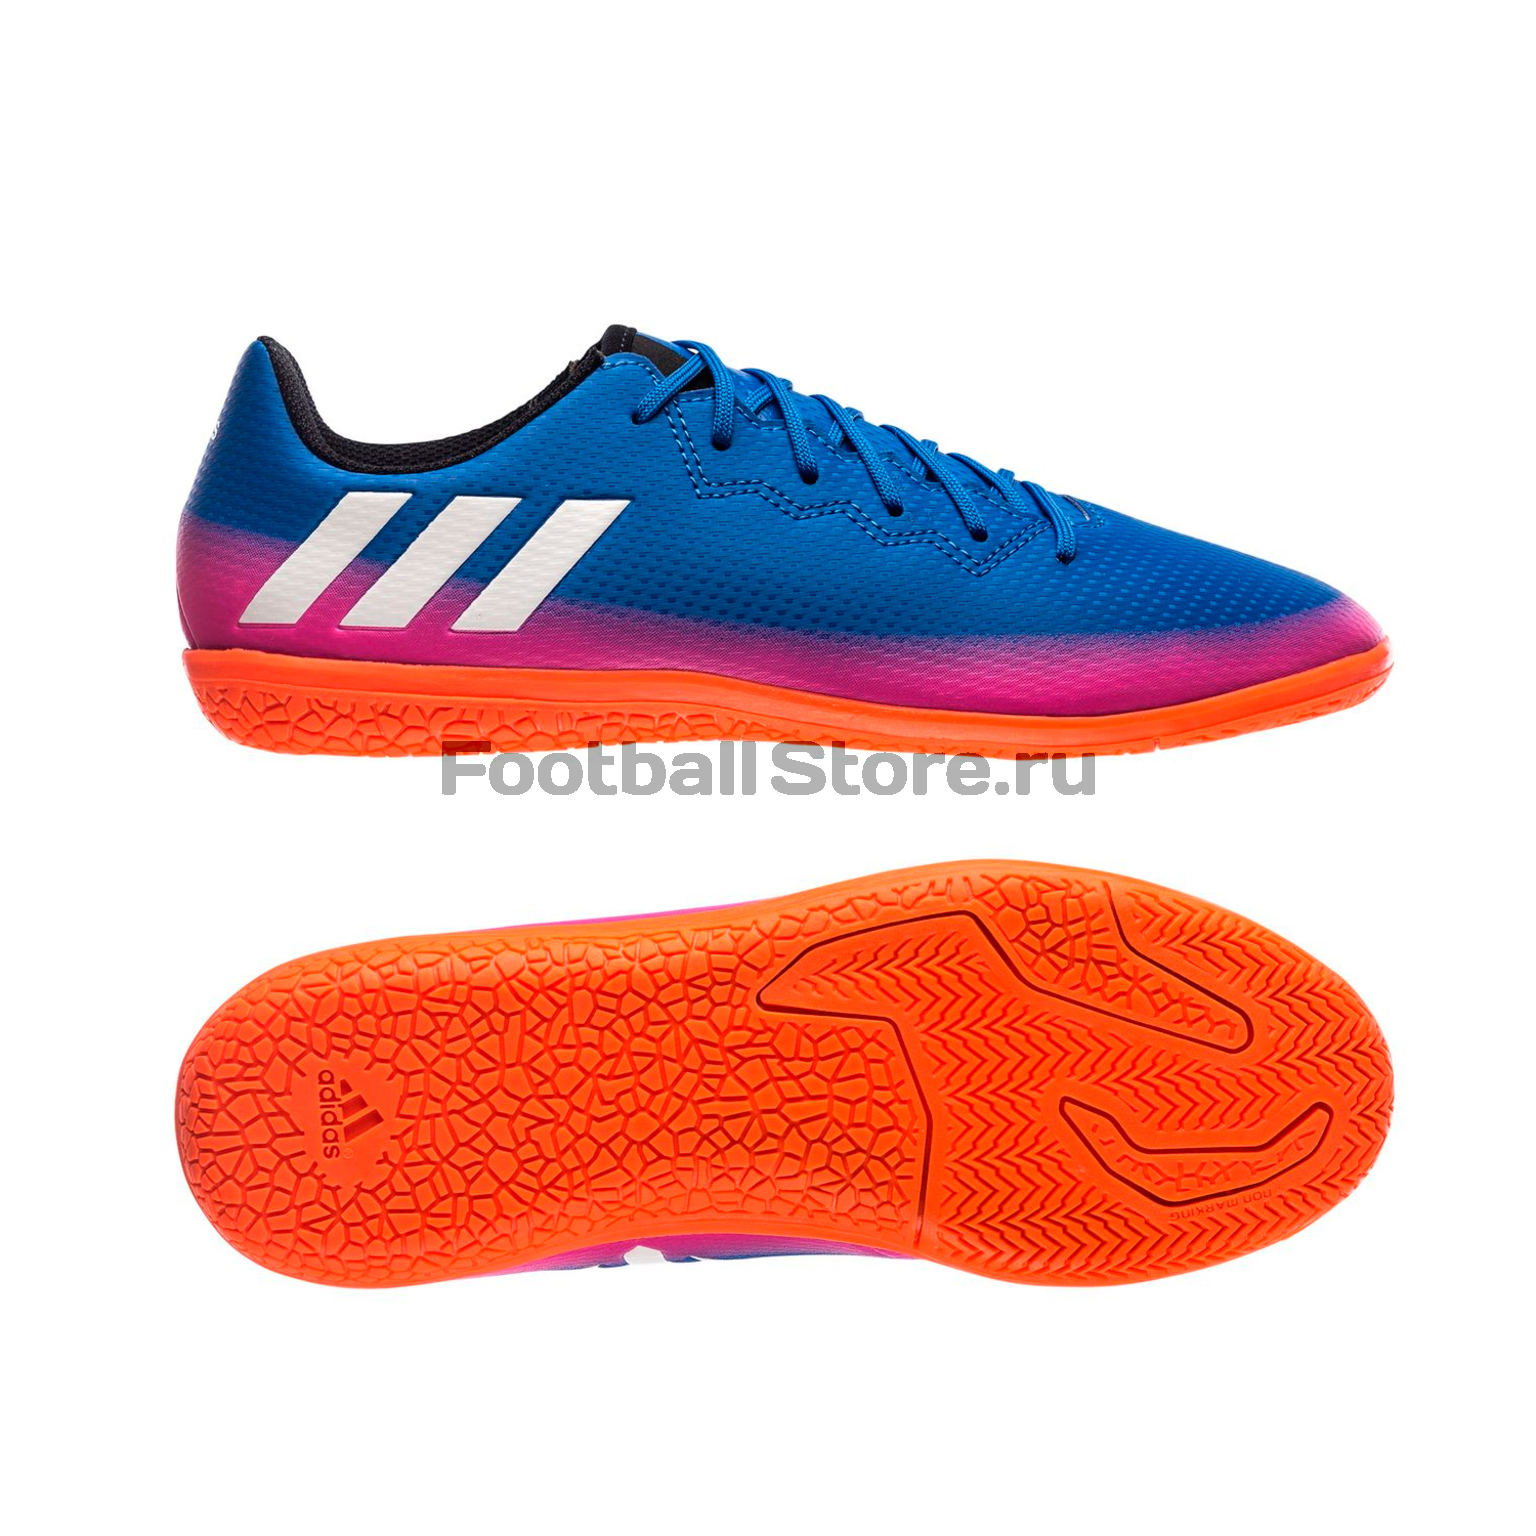 Купить Обувь для зала Adidas Messi 16.3 IN JR BB5652 – в футбольном магазине footballstore, фото